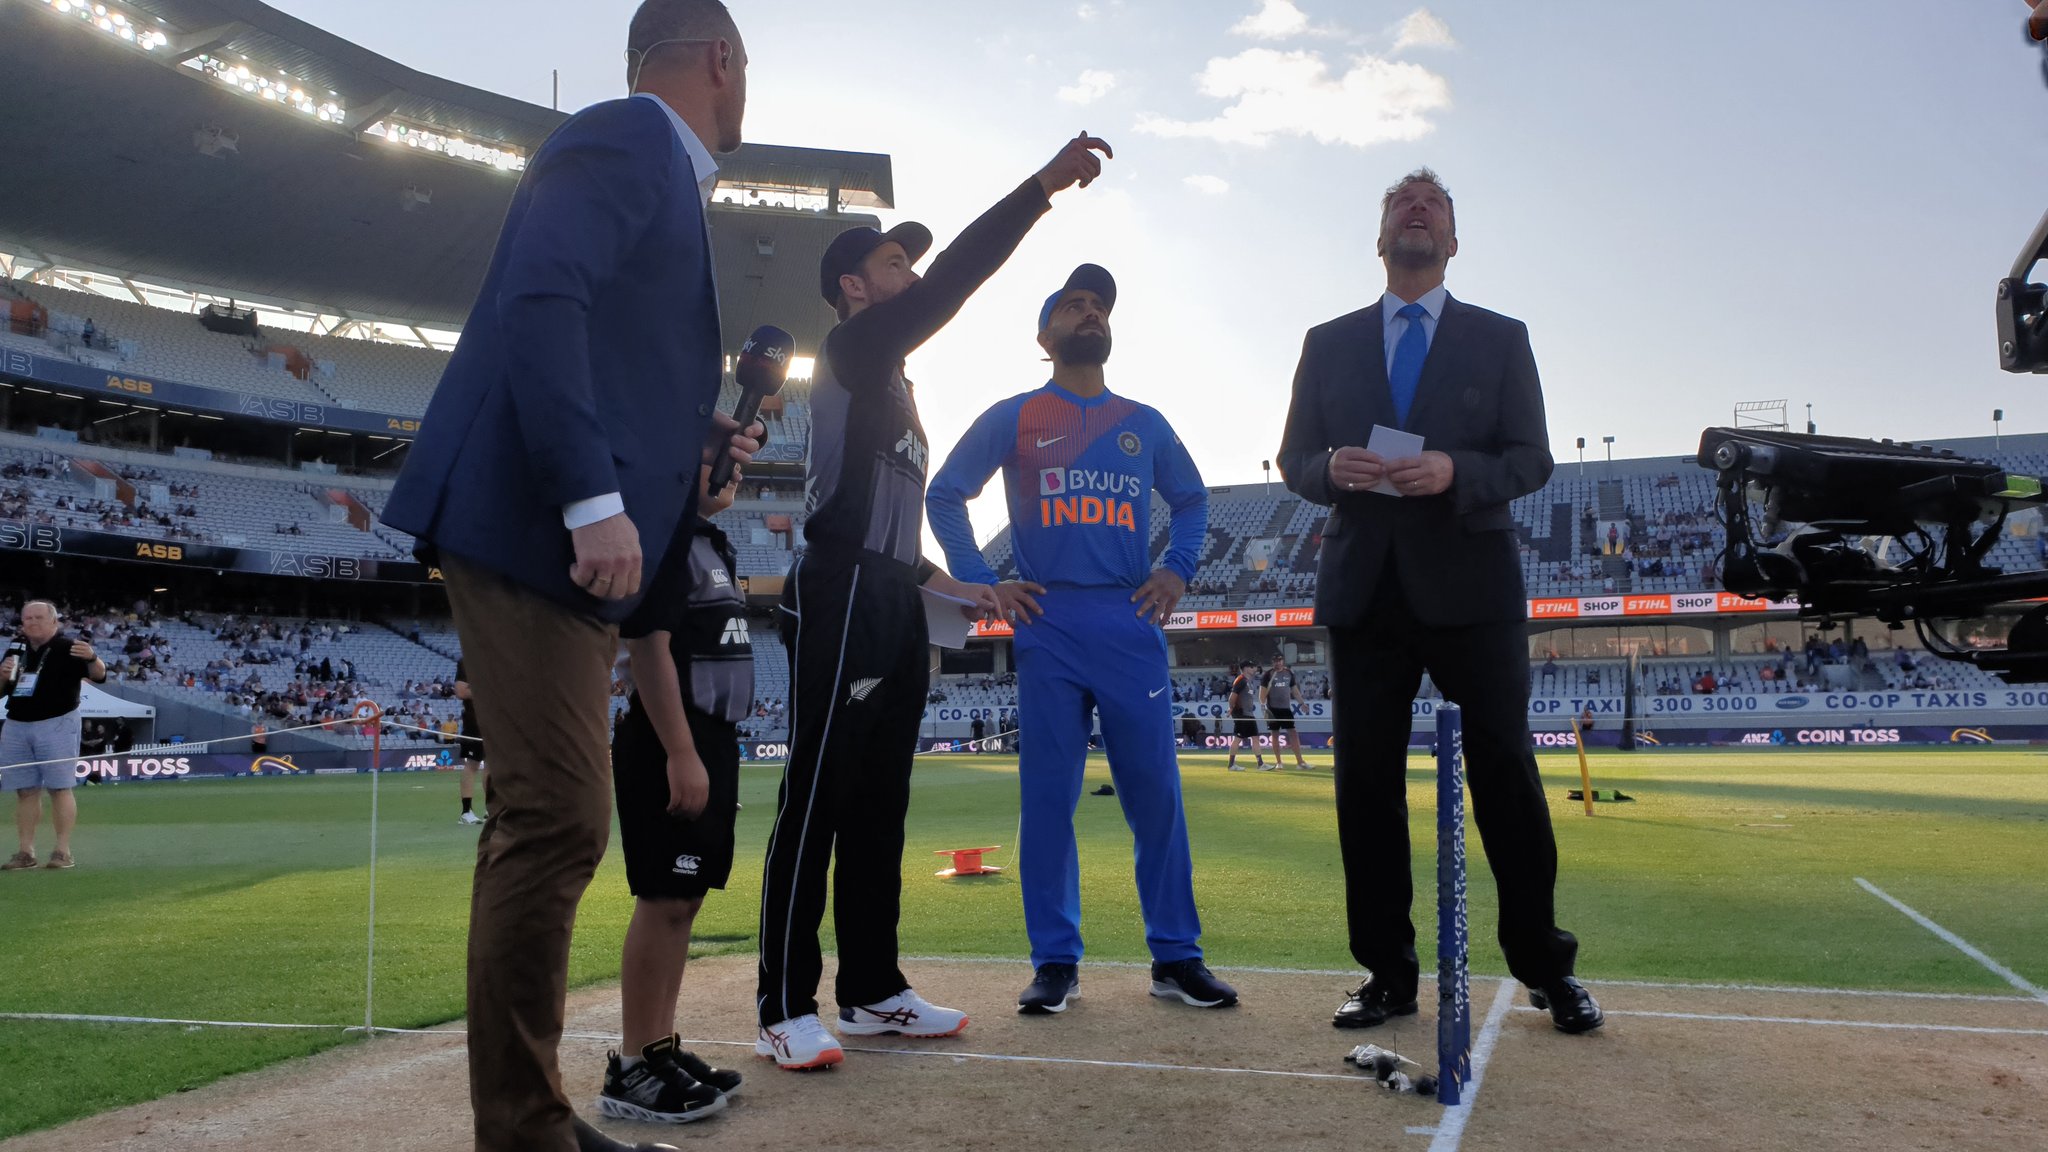 भारताने पहिल्या टी-२० सामन्यात न्यूझीलंडवर ६ गडी राखून विजय मिळवला. भारतीय विजयाची सात कारणे... (फोटो सौजन्य - ट्विटर)